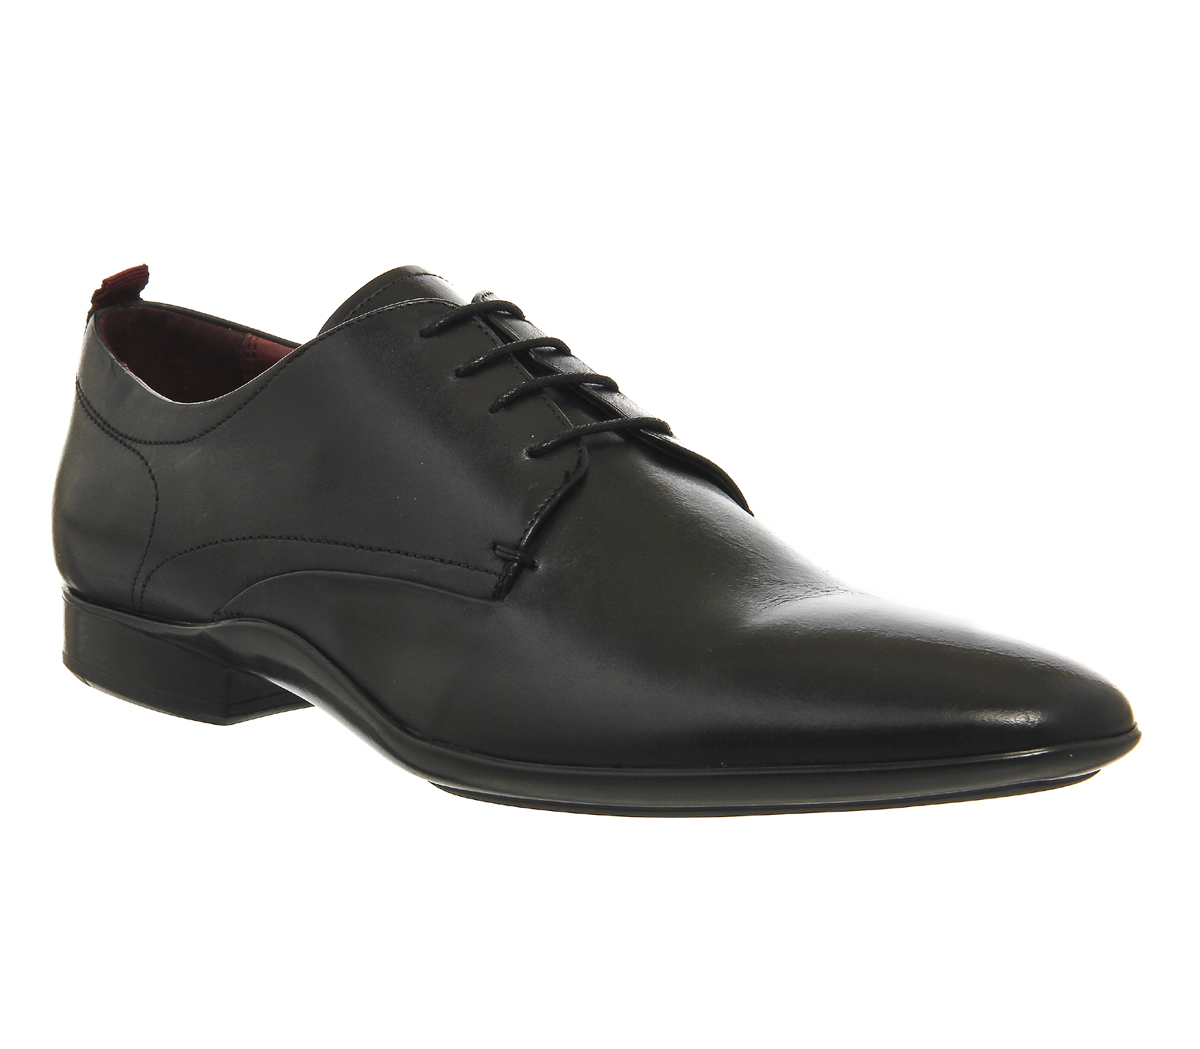 Poste Claudio Plain Toe Lace Up Shoes Black Leather - Men’s Smart Shoes